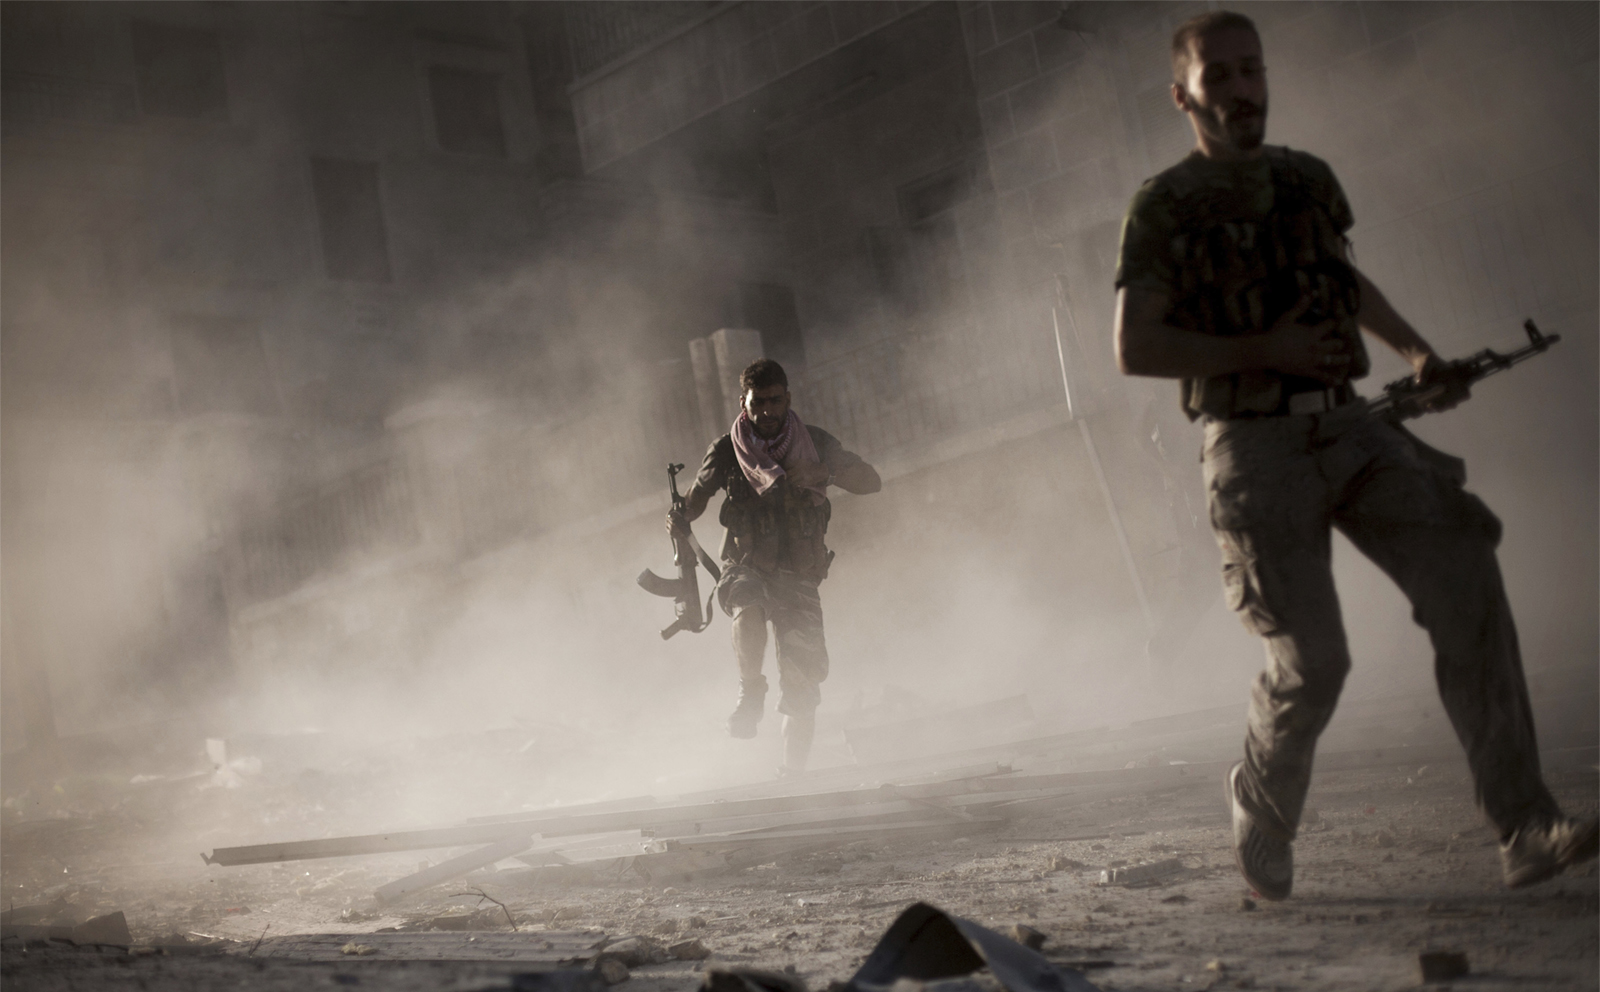 جنود في الجيش السوري الحر يفرون بعد قصف مدفعي لنظام الأسد في حلب (تصوير AP).